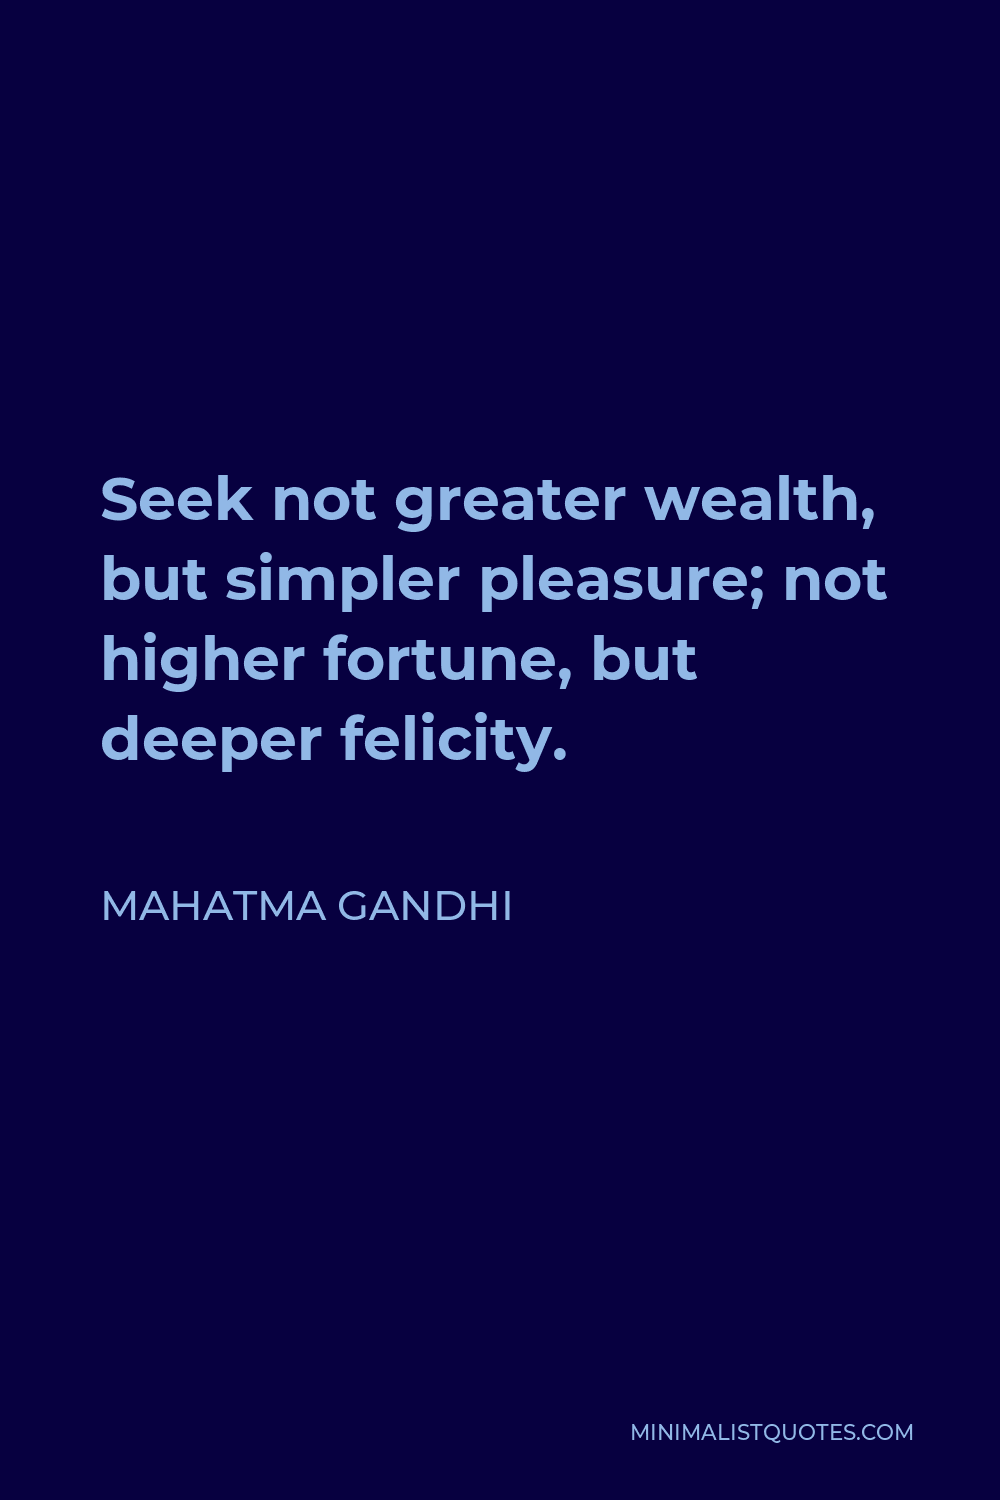 Mahatma Gandhi Quote - Seek not greater wealth, but simpler pleasure; not higher fortune, but deeper felicity.